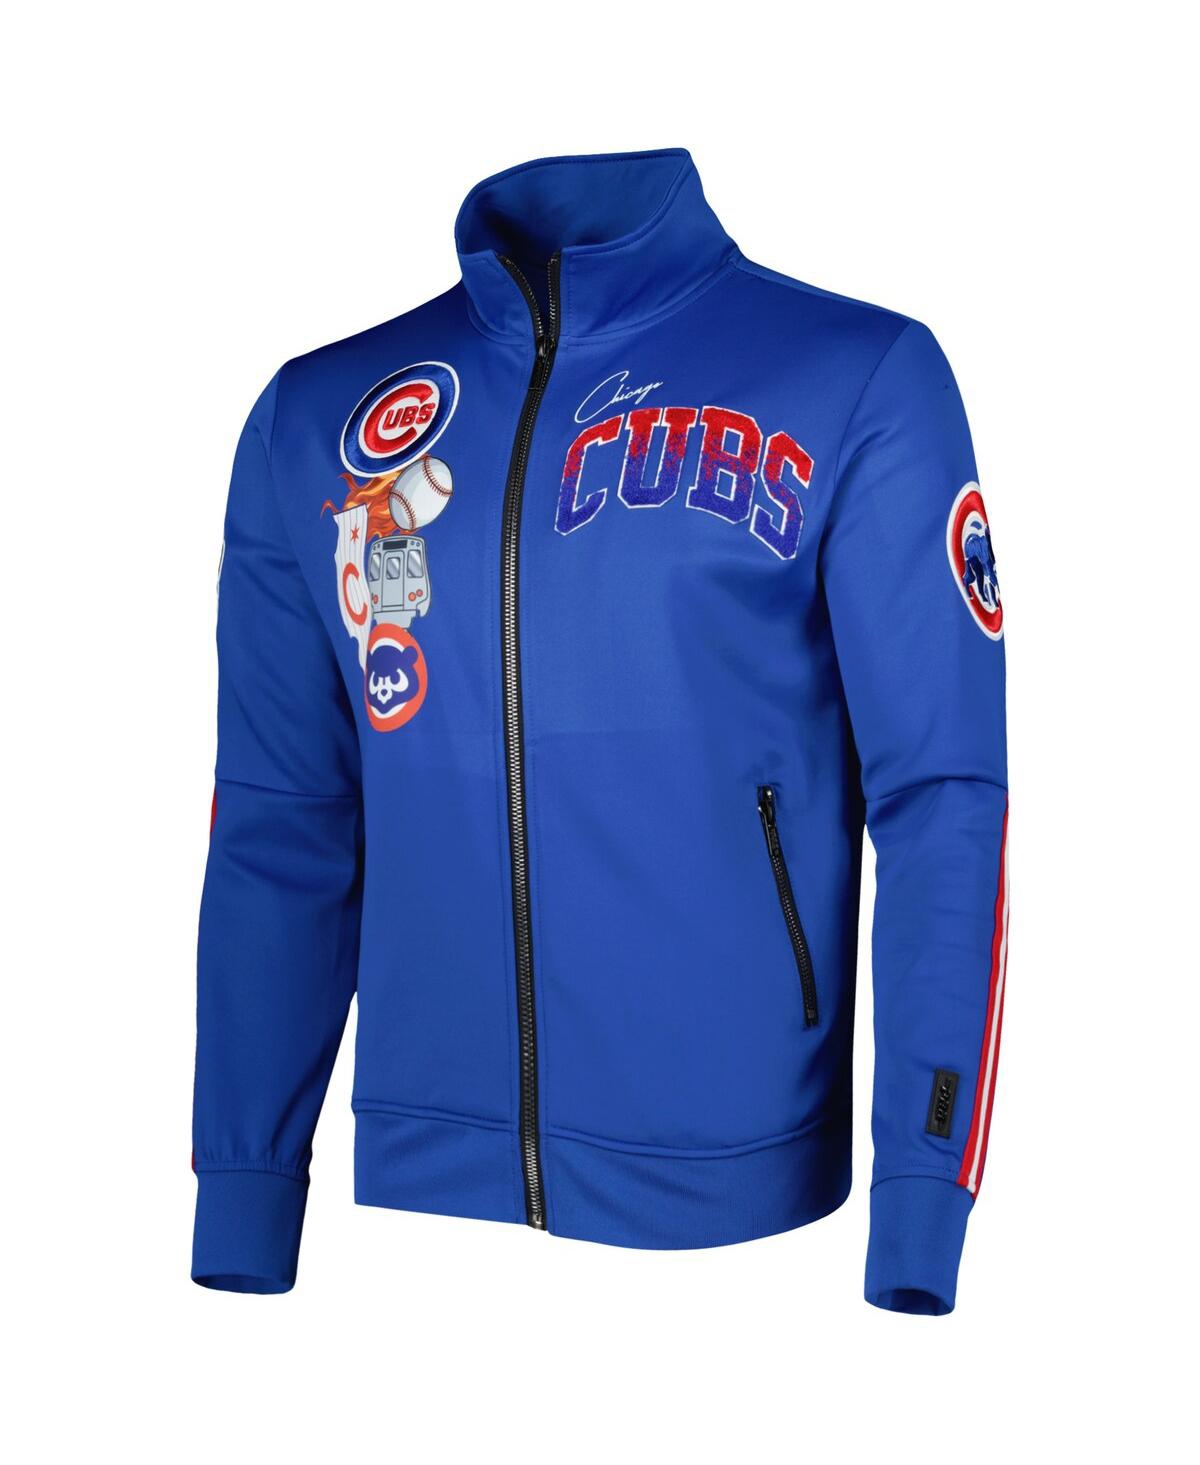 Shop Pro Standard Men's  Royal Chicago Cubs Hometown Full-zip Track Jacket